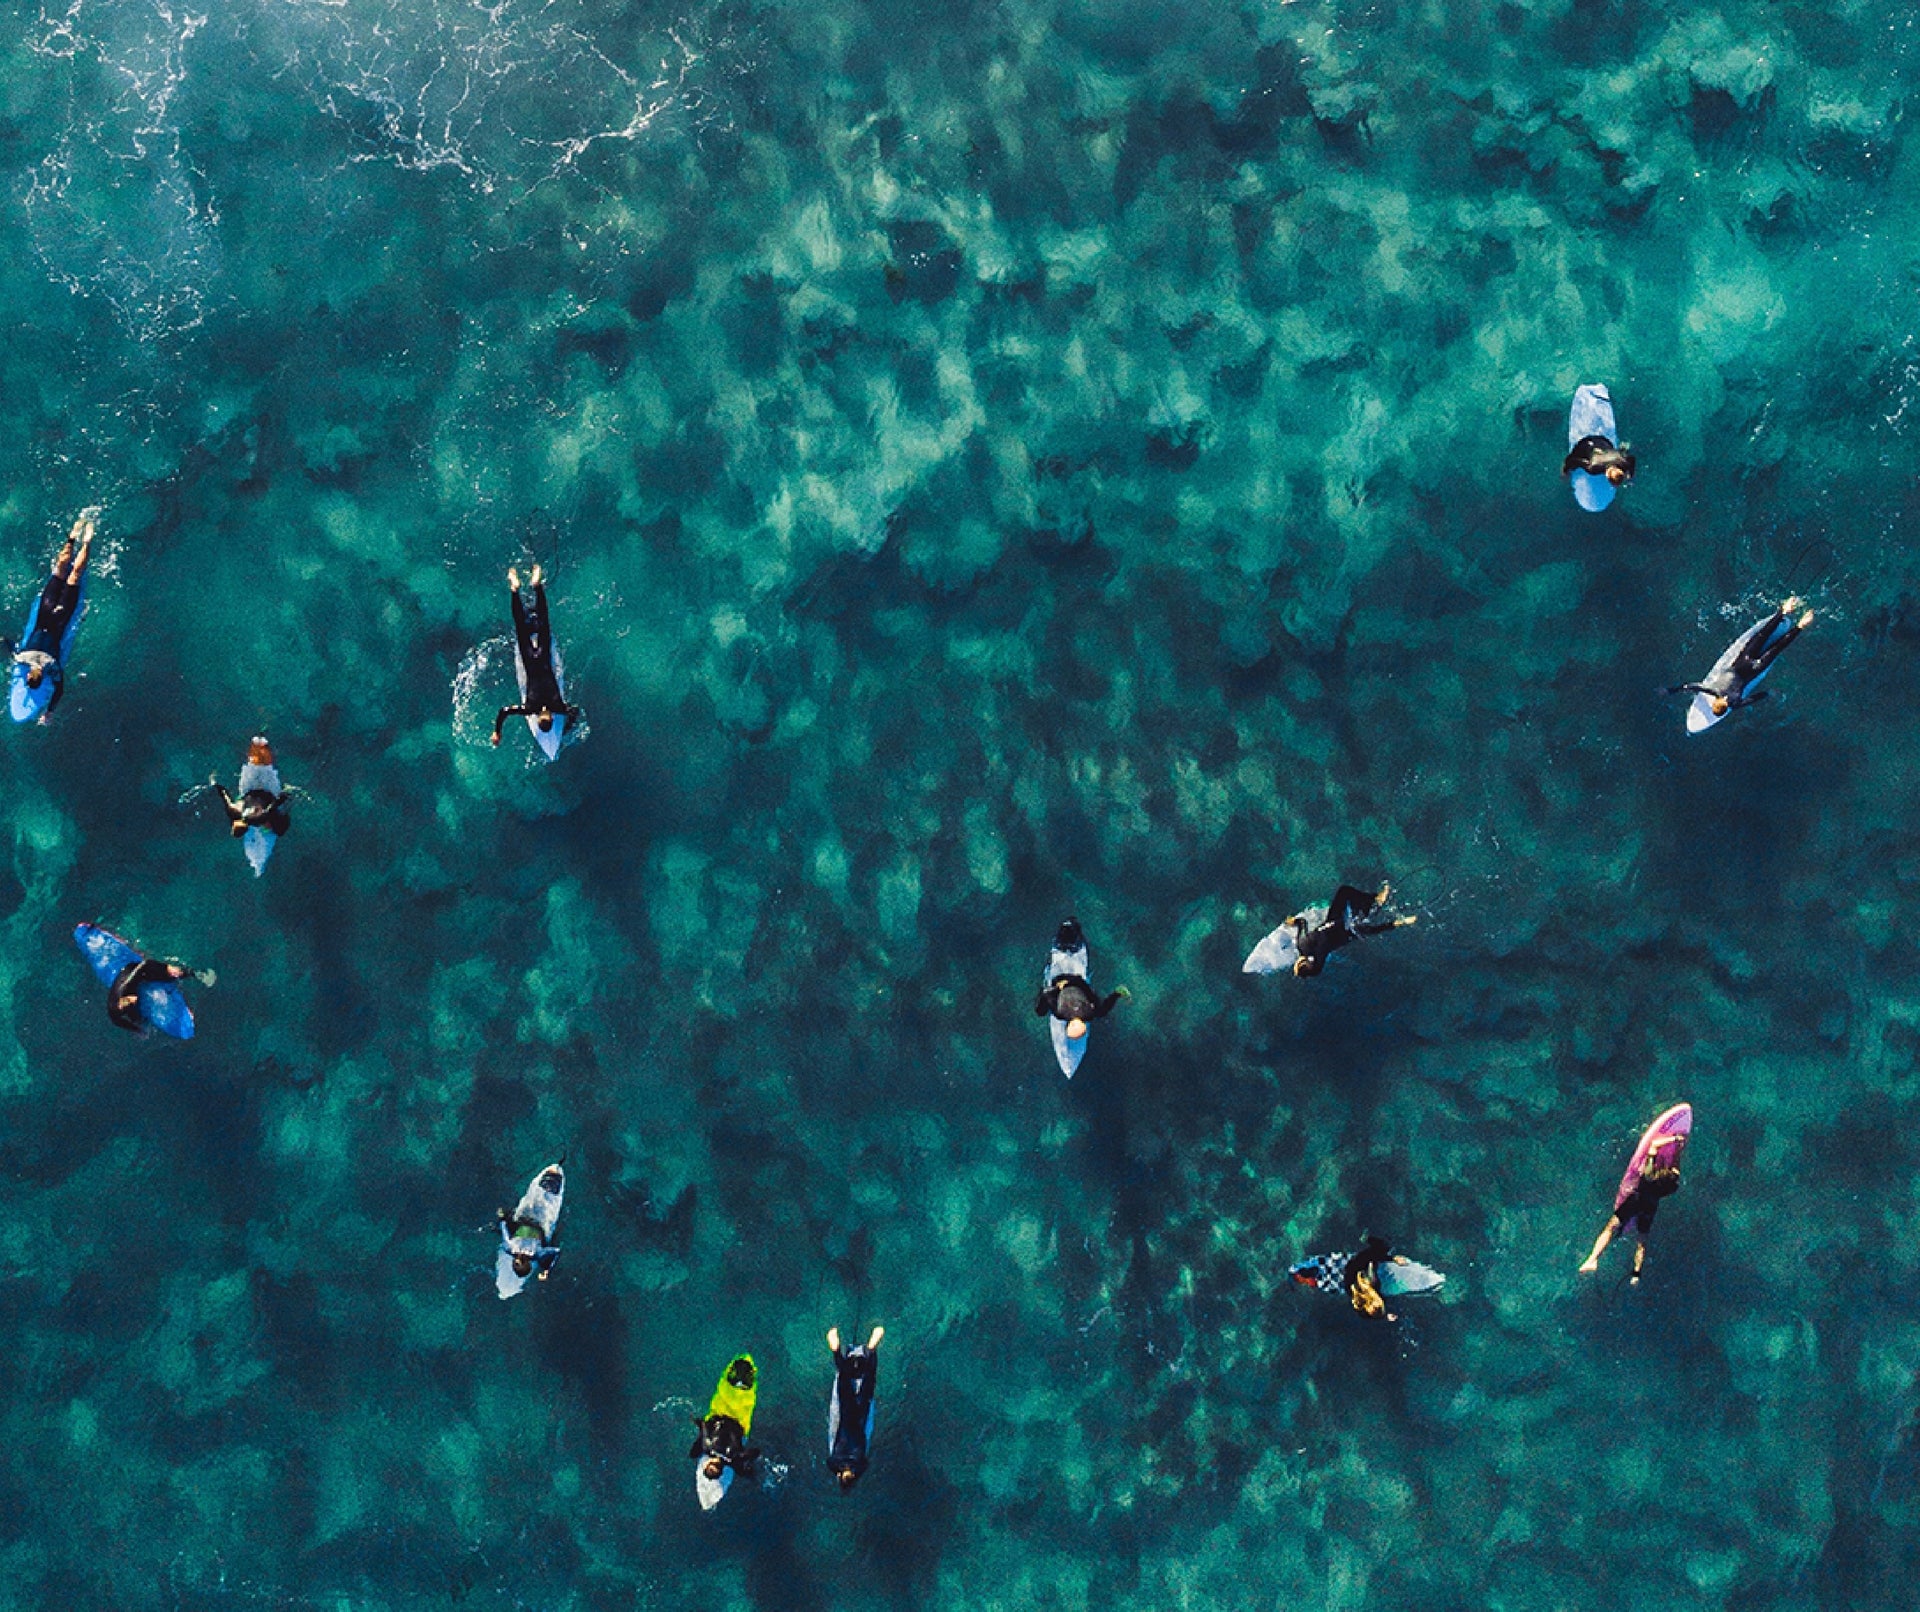 kayakers paddling in the ocean